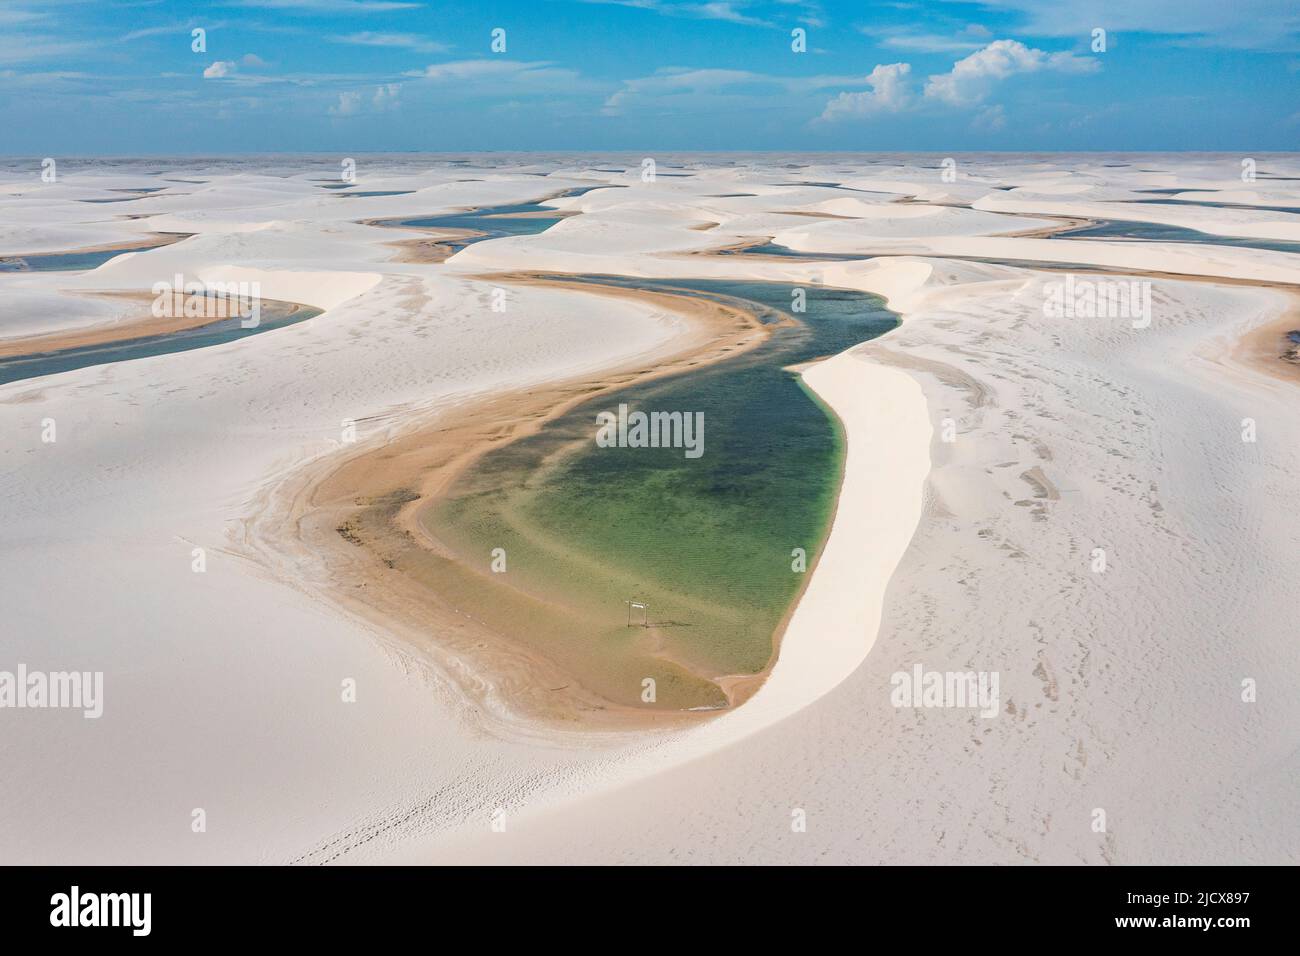 Vue aérienne de lacs d'eau douce entre d'énormes dunes de sable dans le parc national de Lencois Maranhenses, Maranhao, Brésil, Amérique du Sud Banque D'Images